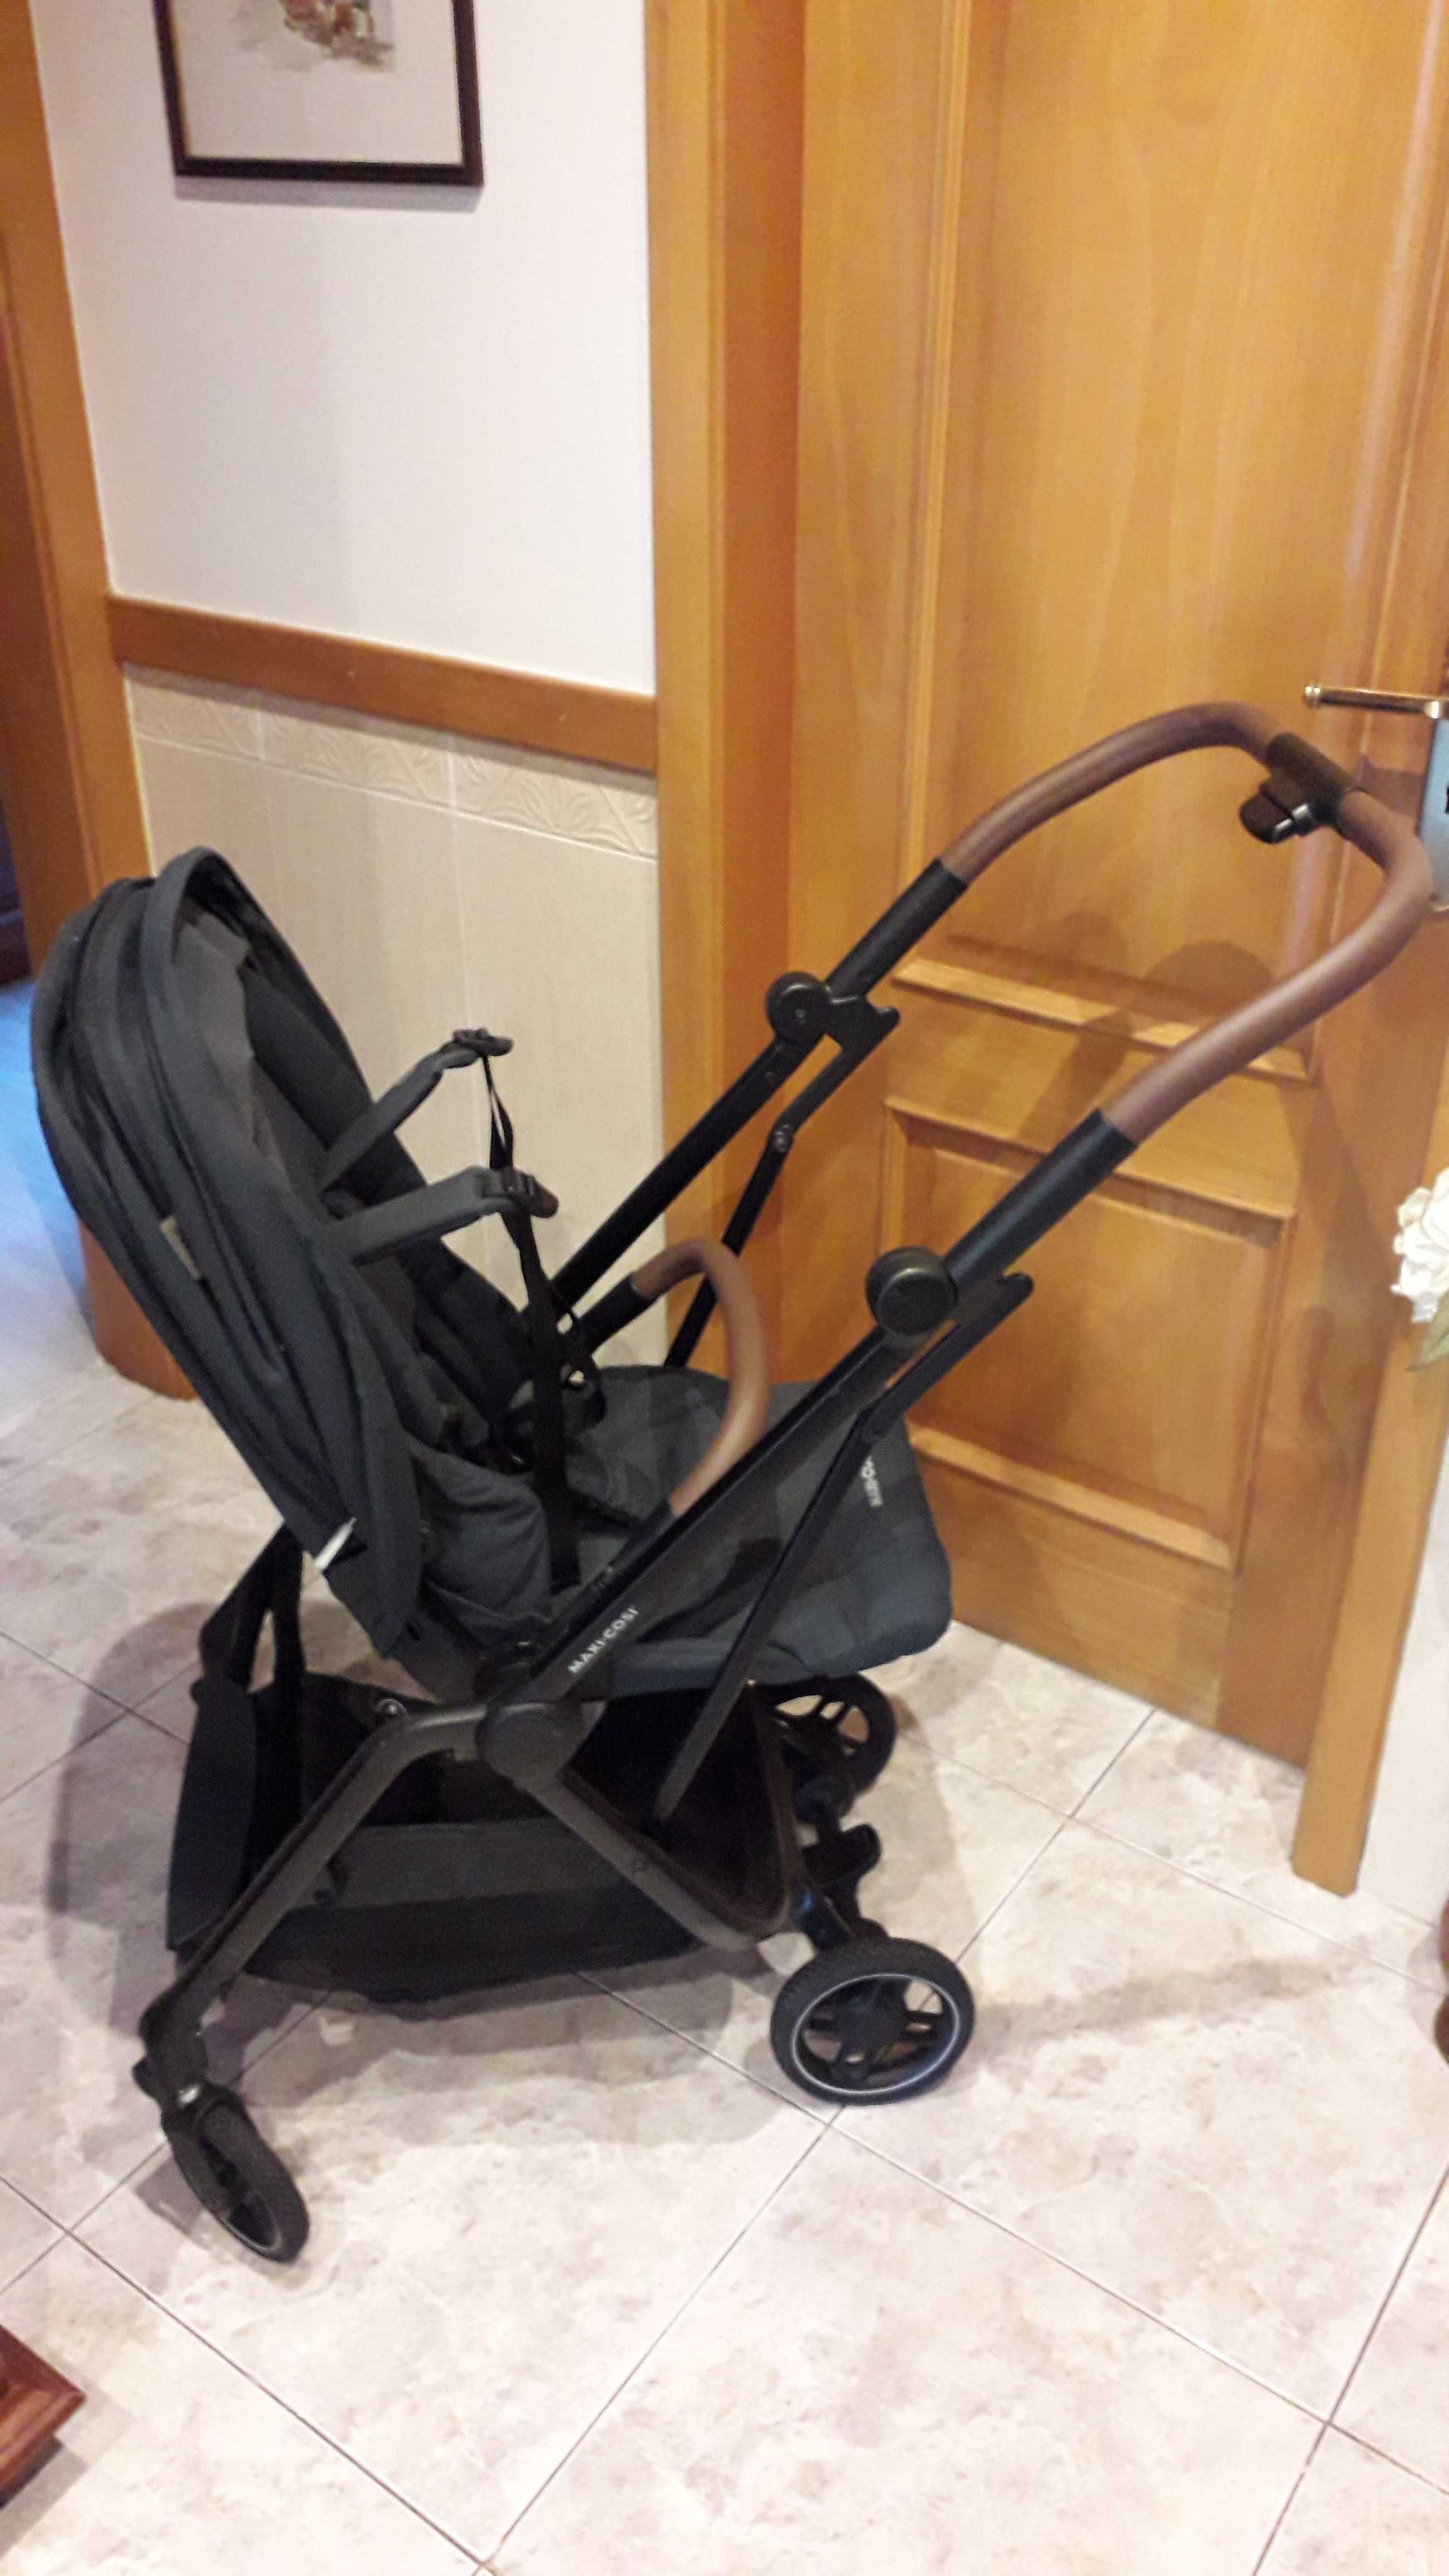 Baby coque (com base para automóvel) e cadeira de passeio (Maxicosi)